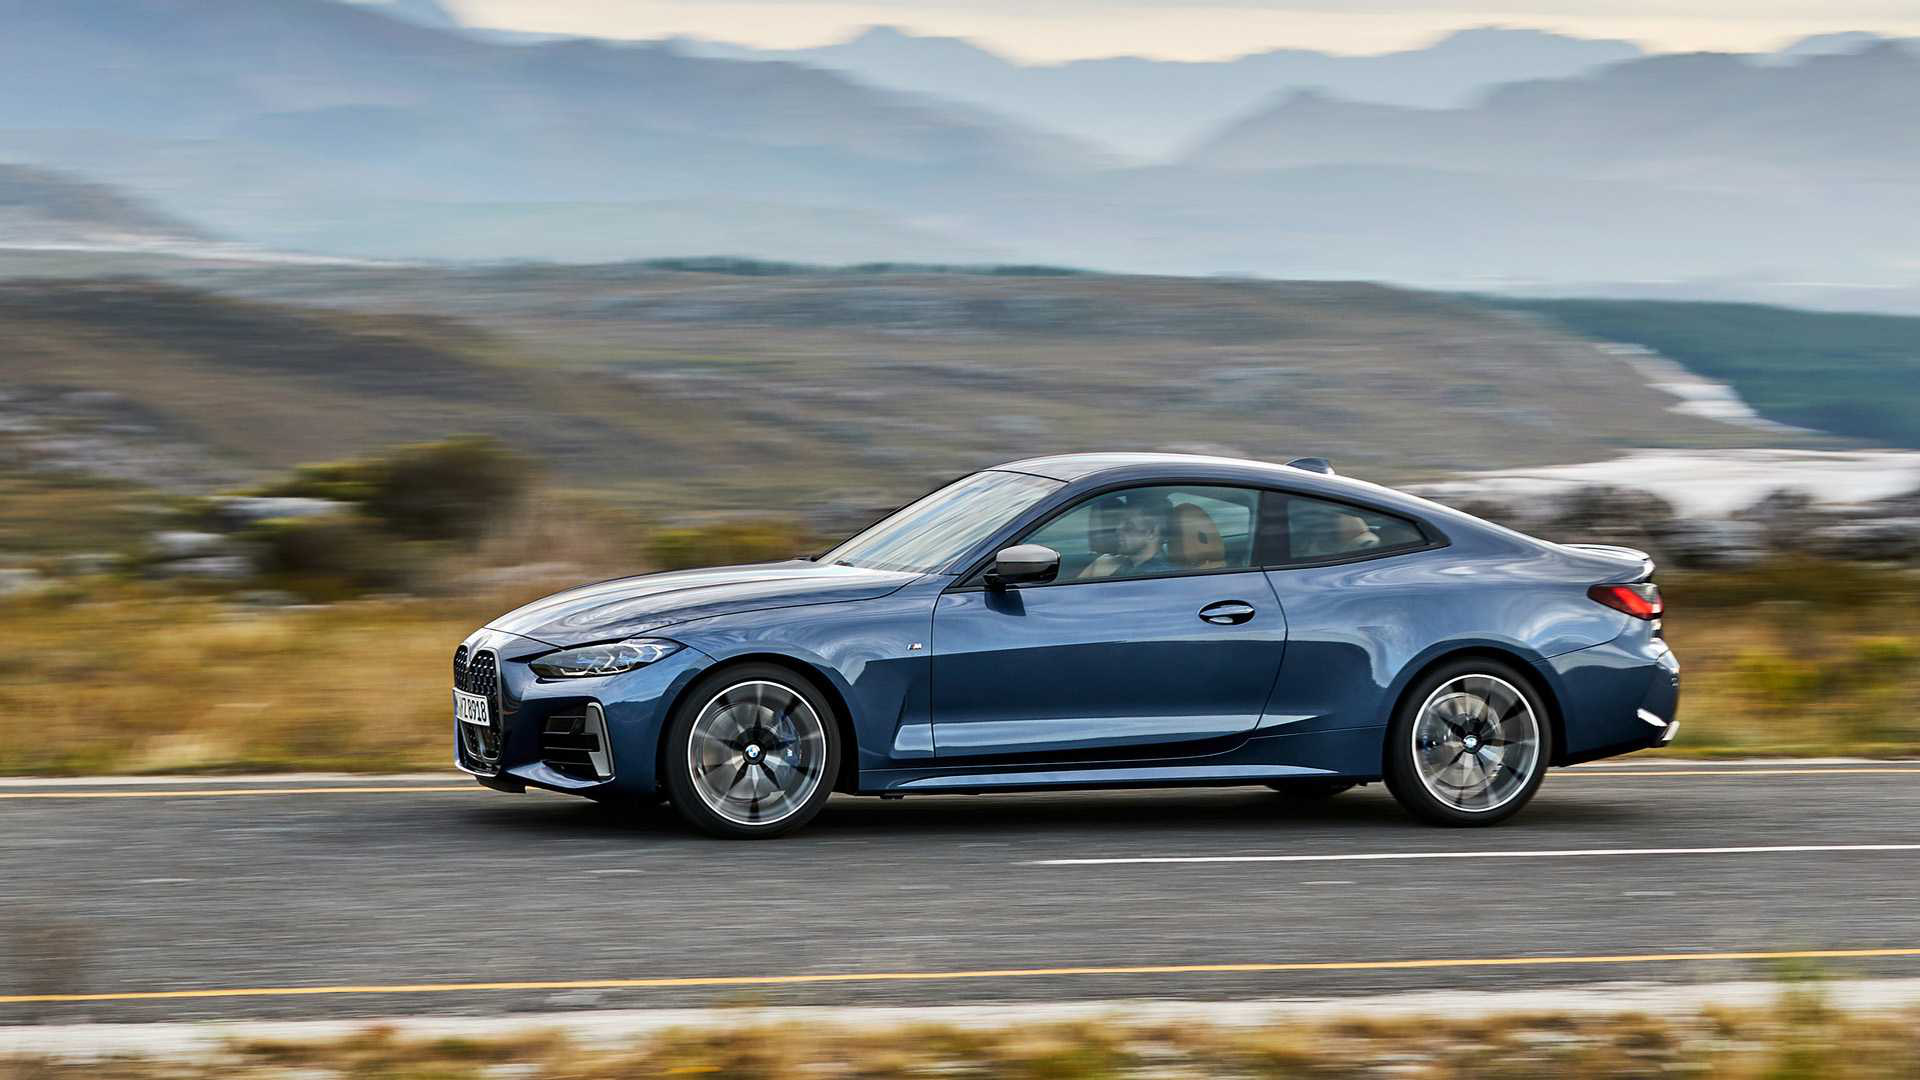 Ra mắt BMW 4-Series 2021: Tản nhiệt to chưa từng thấy, thiết kế đẹp ngang concept - Ảnh 1.